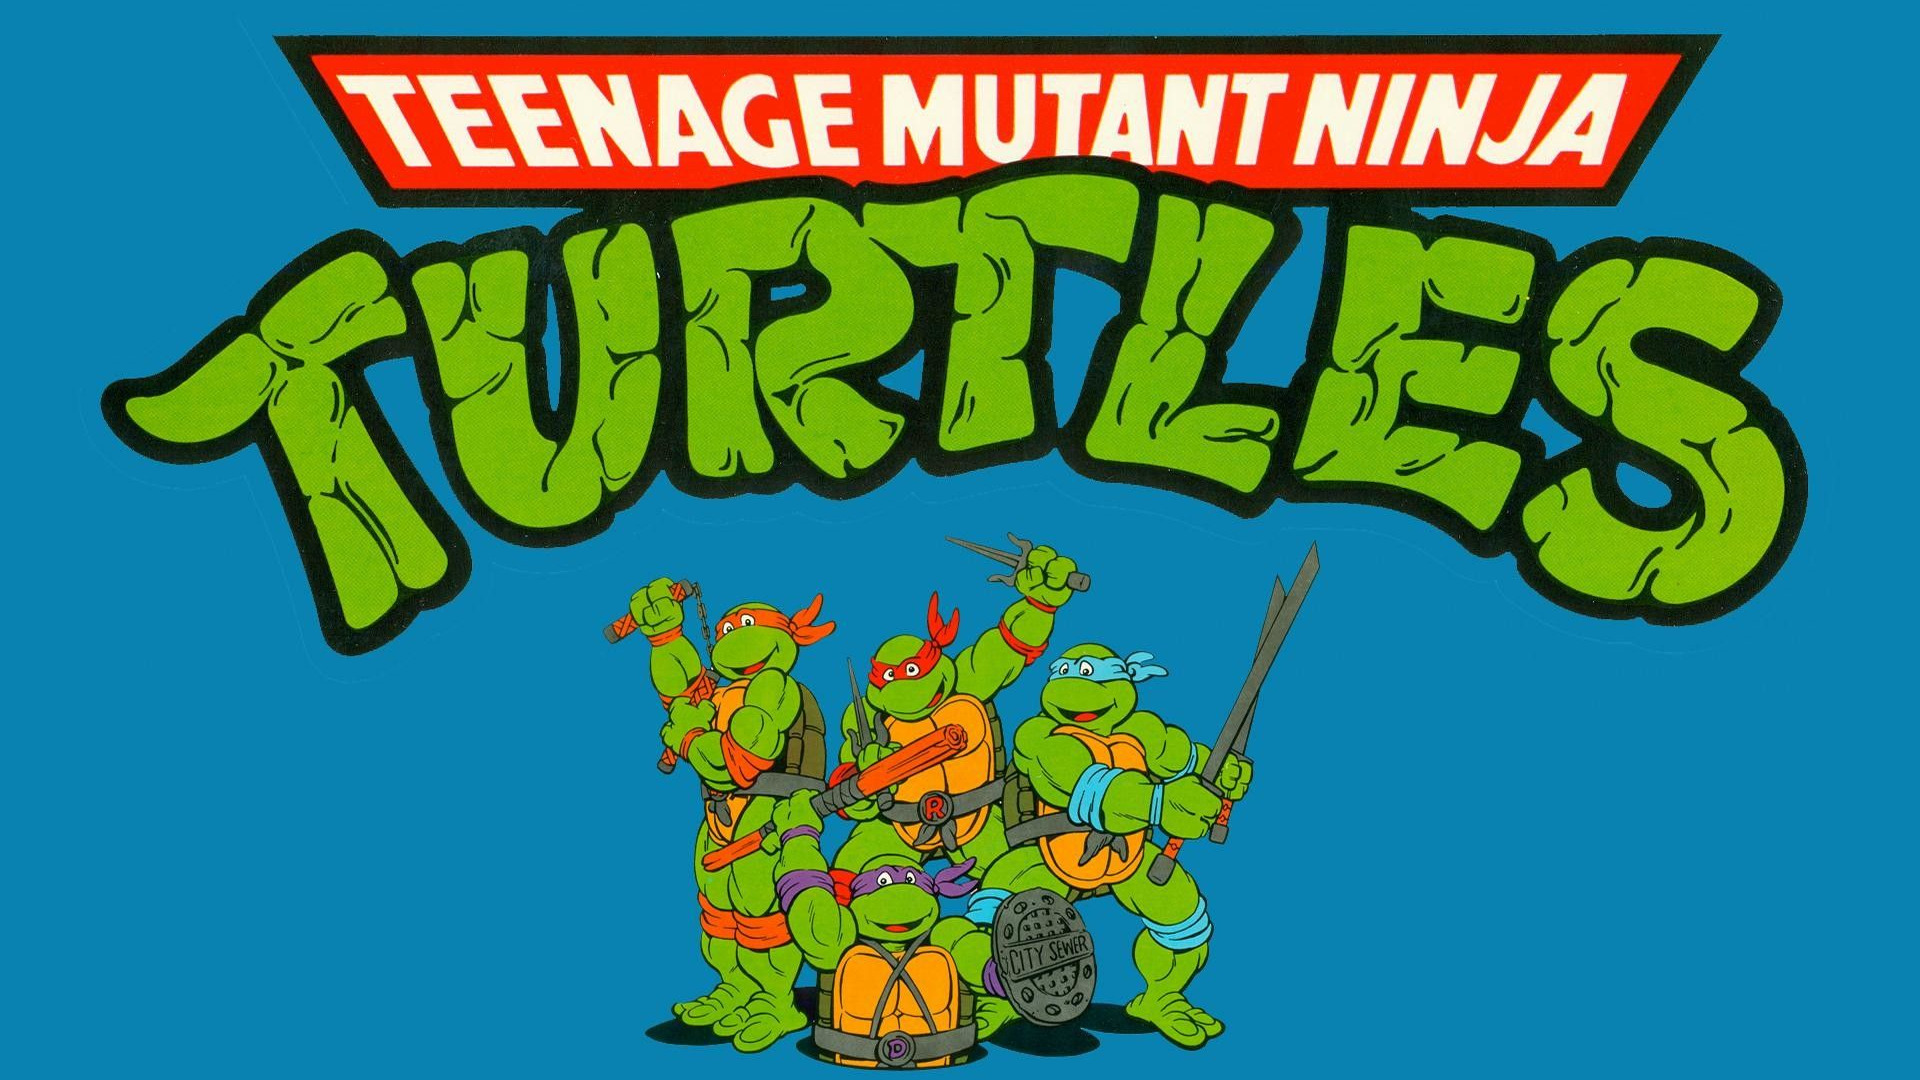 Cartoon Teenage Mutant Ninja Turtles (1987)